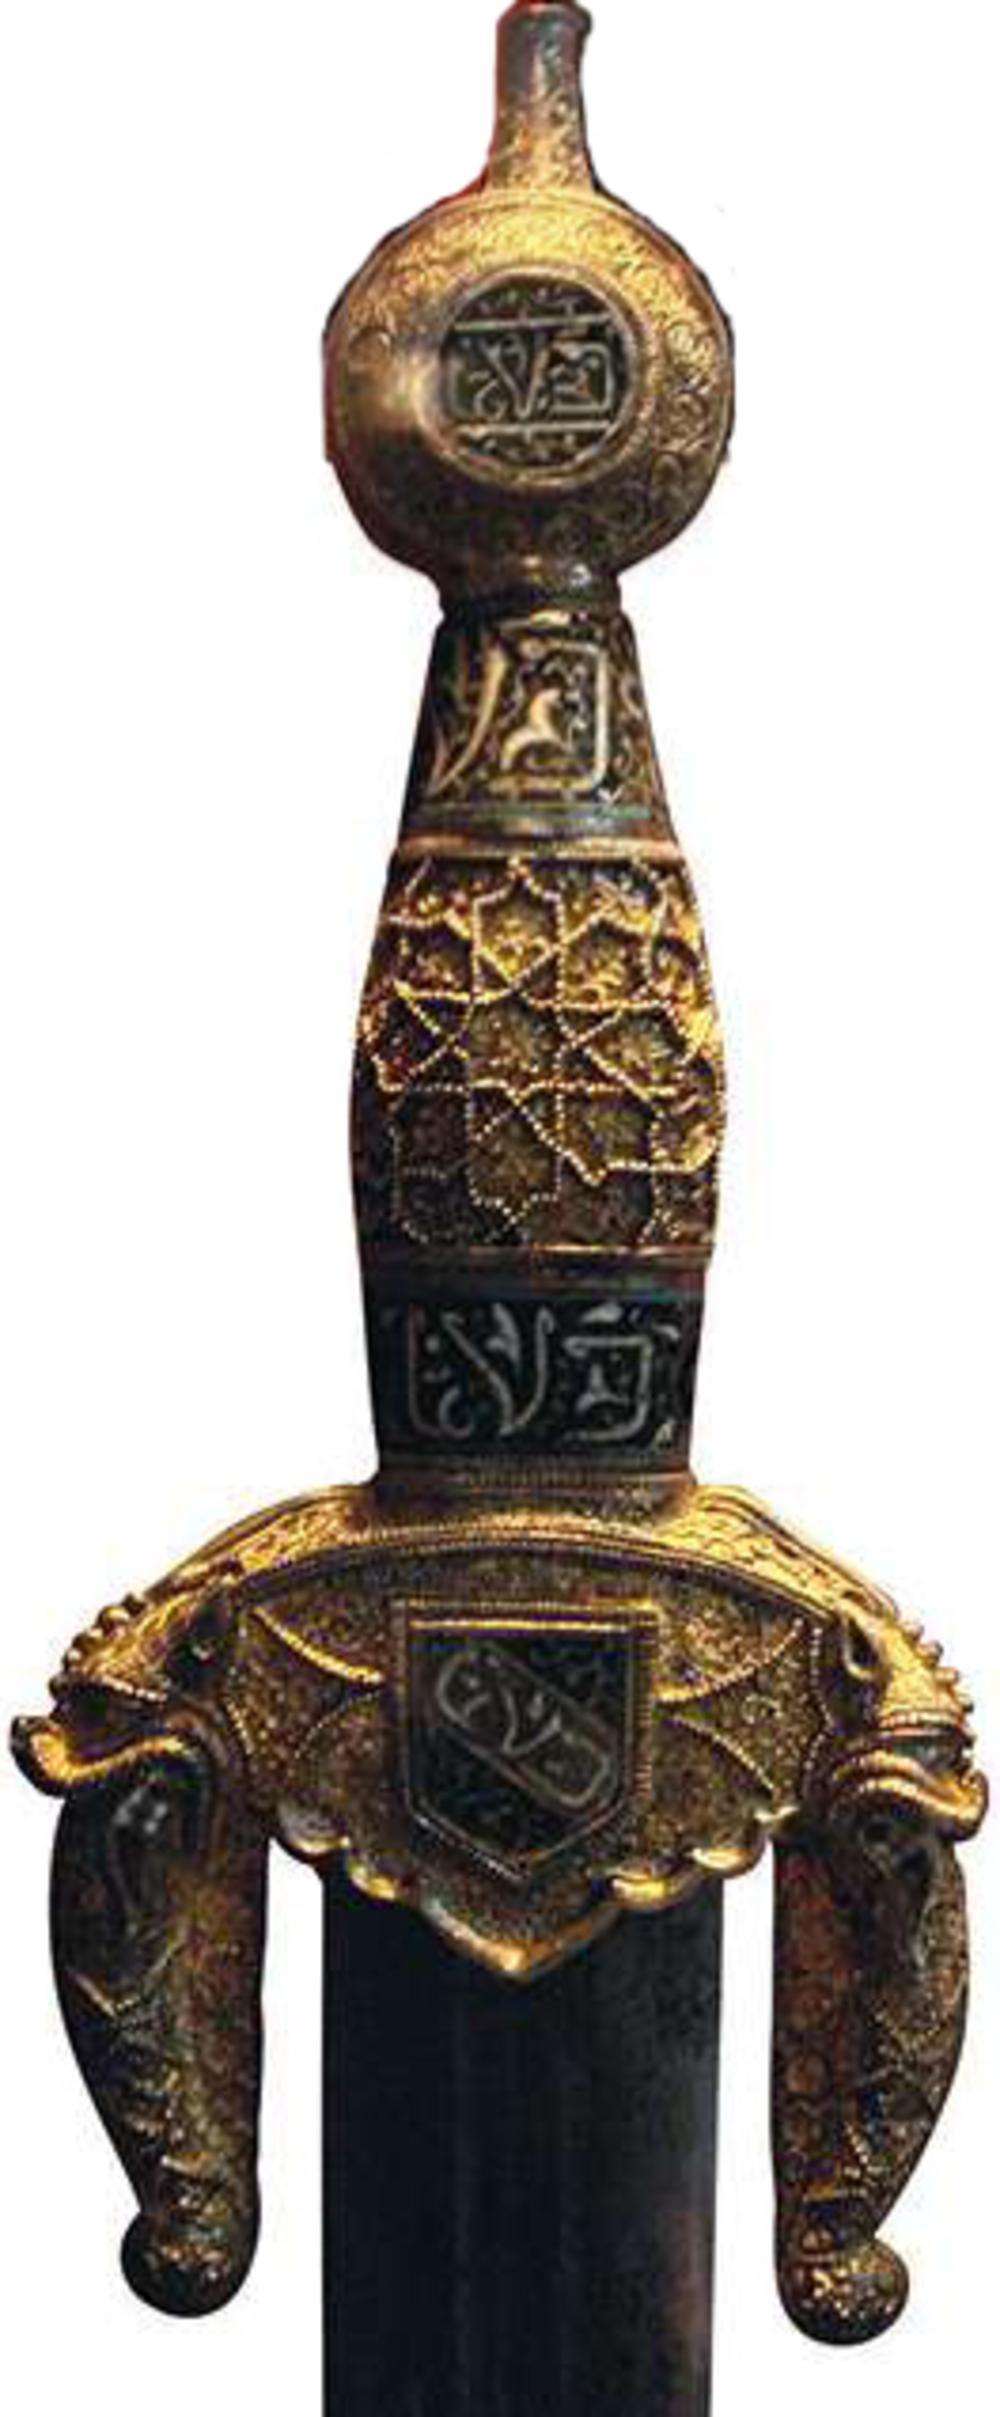 Het zwaard dat toebehoord zou hebben aan de laatste emir van Granada. (Musée de Cluny)